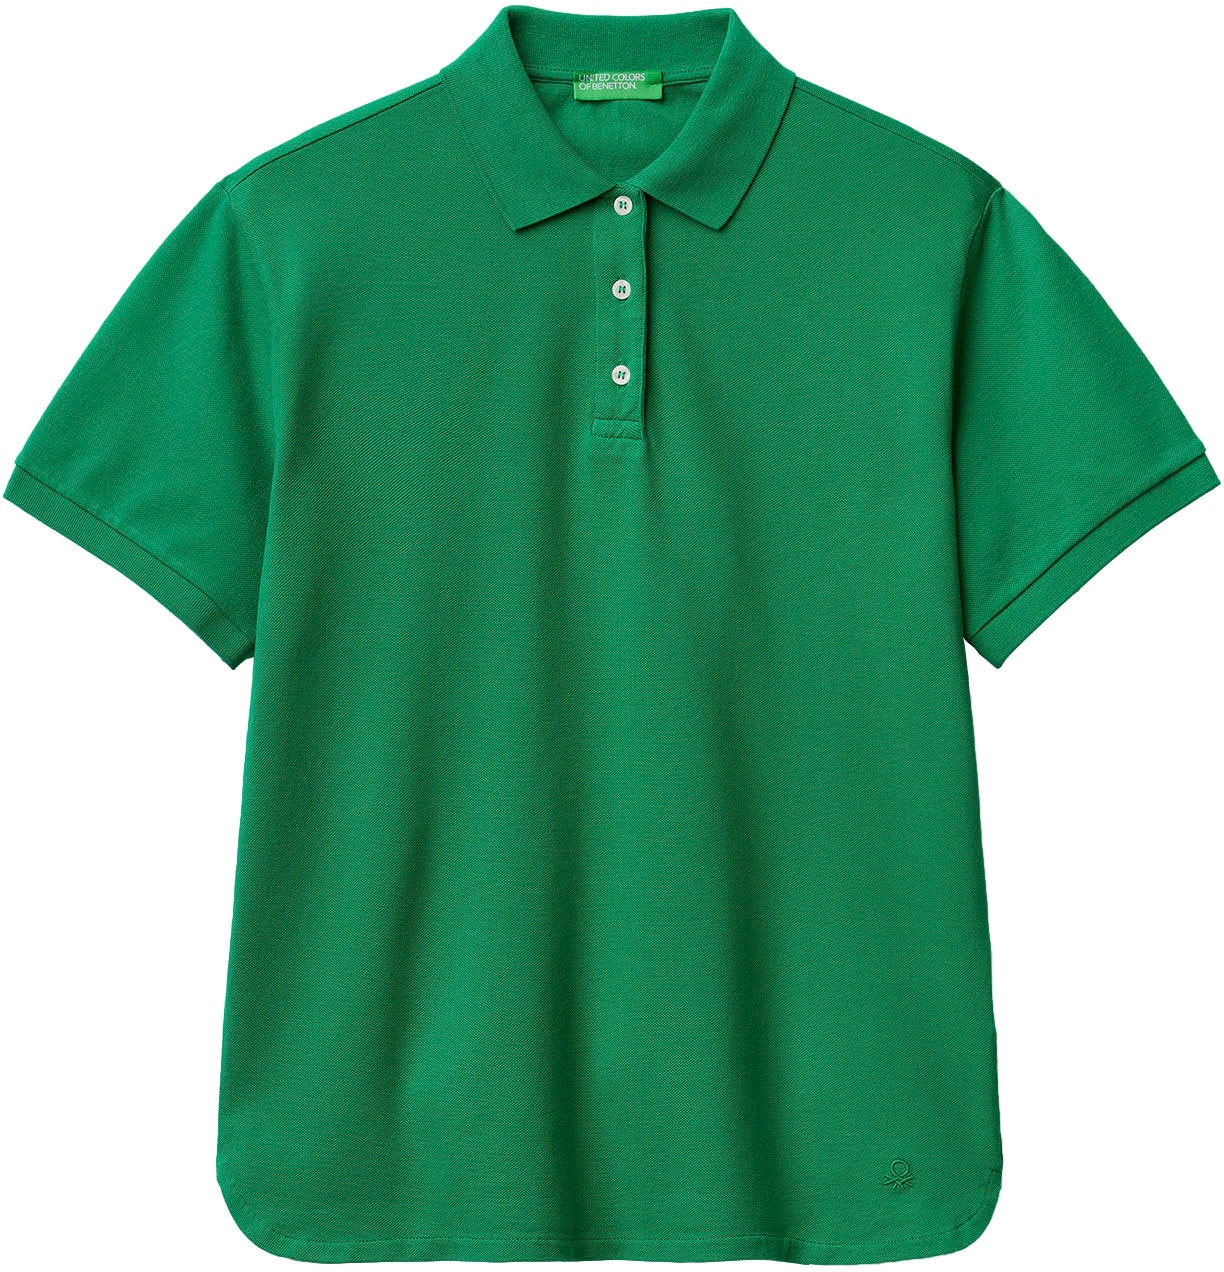 mit bei of Knöpfen Poloshirt, OTTO Colors online United Benetton perlmuttfarbenen kaufen